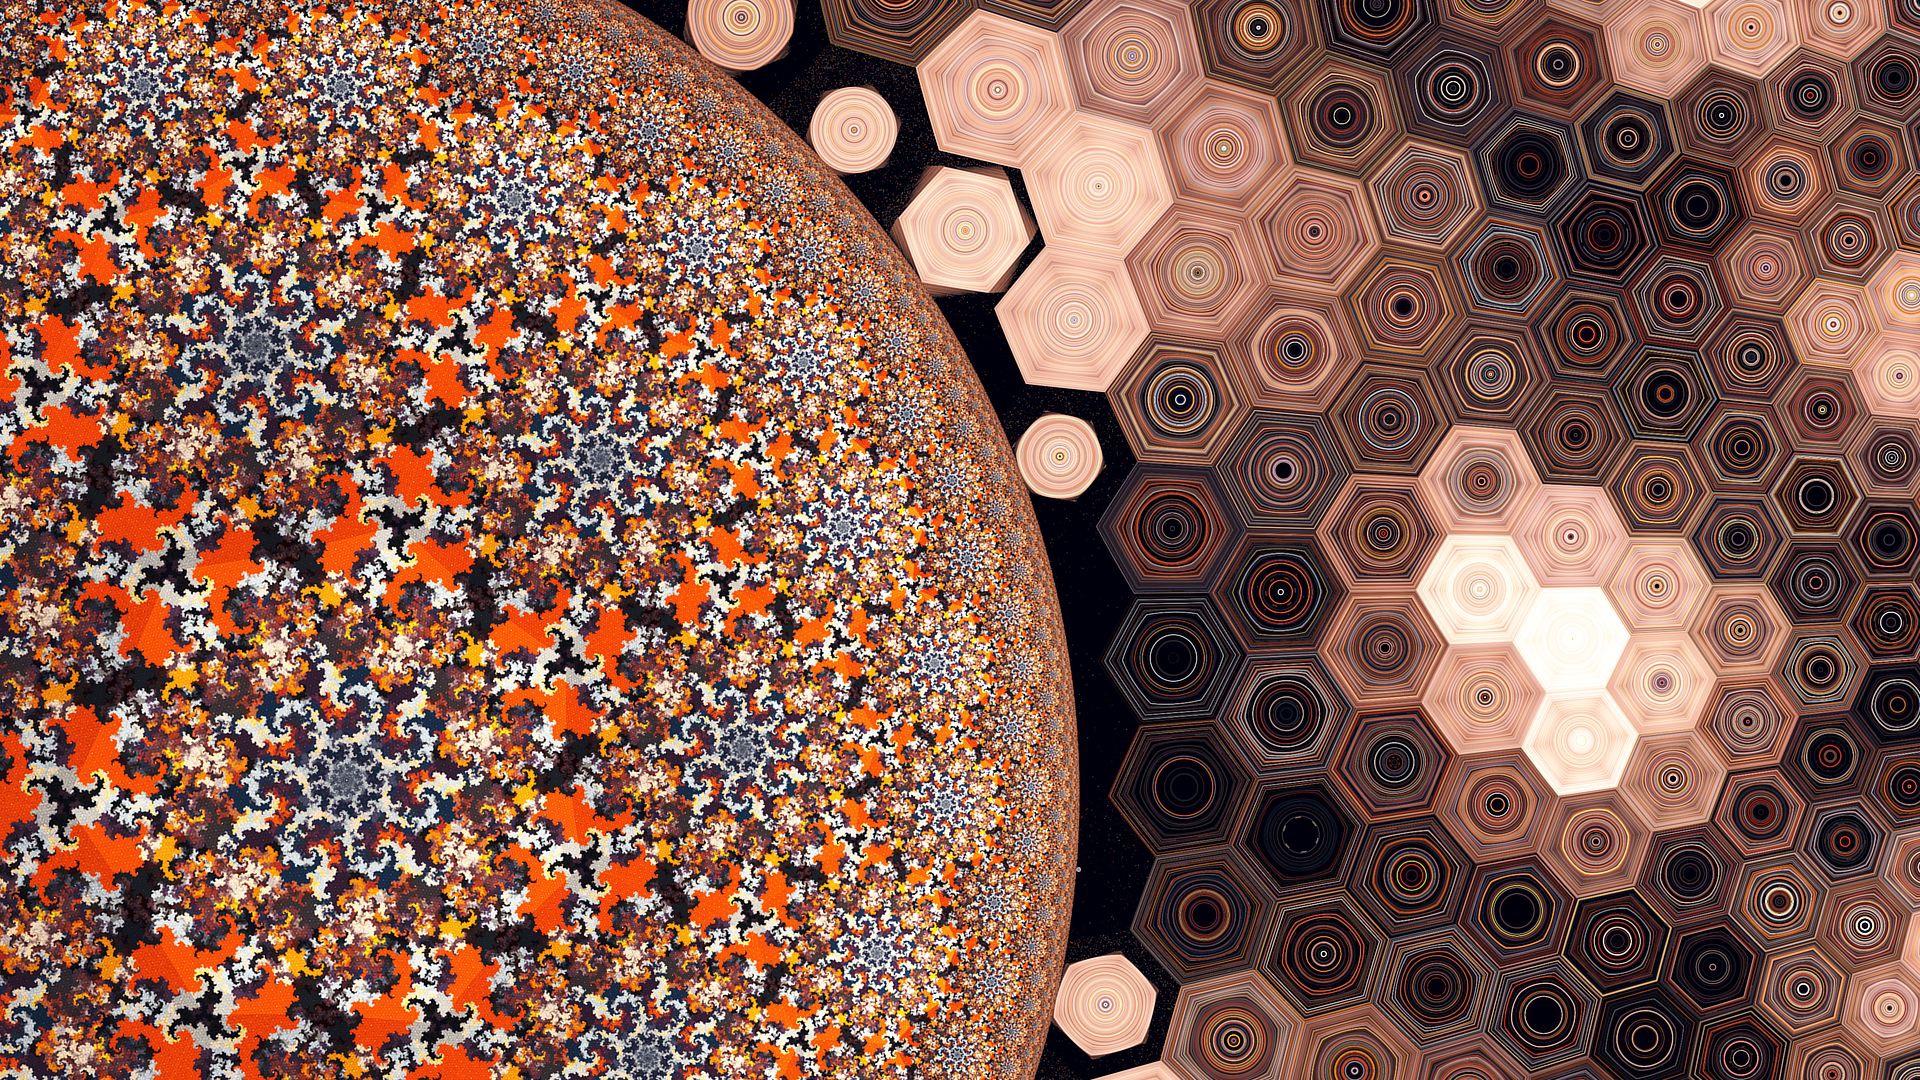 Artistic Digital Art Fractal Hexagon Pattern 1920x1080